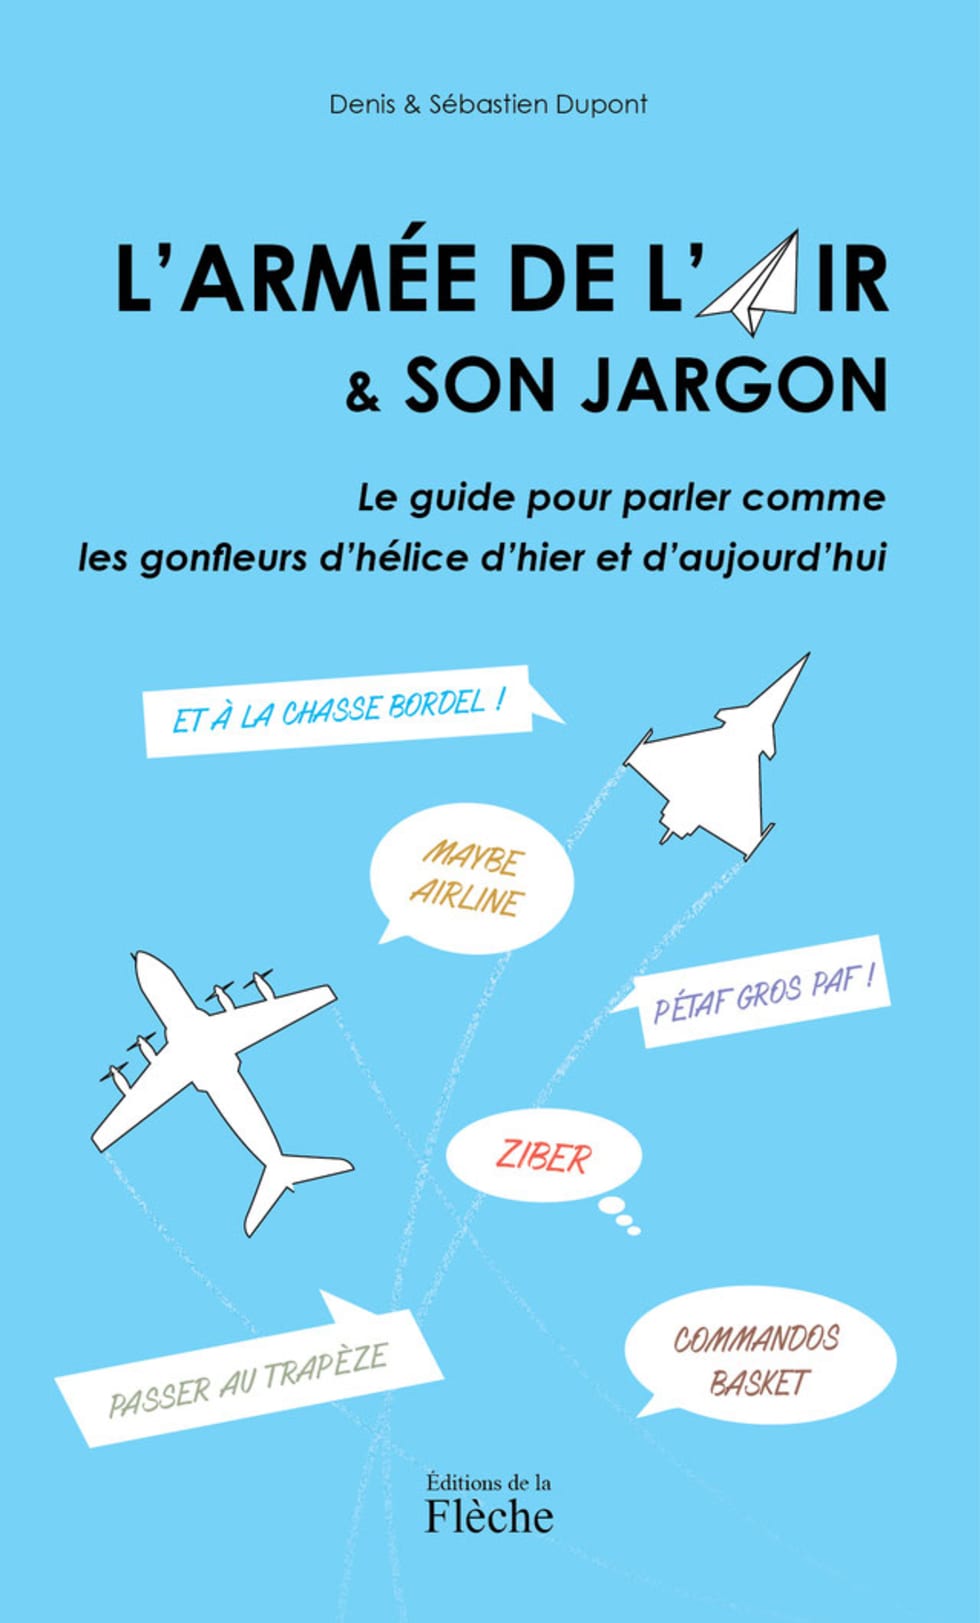 Livre : "L’Armée de l’air & son jargon"